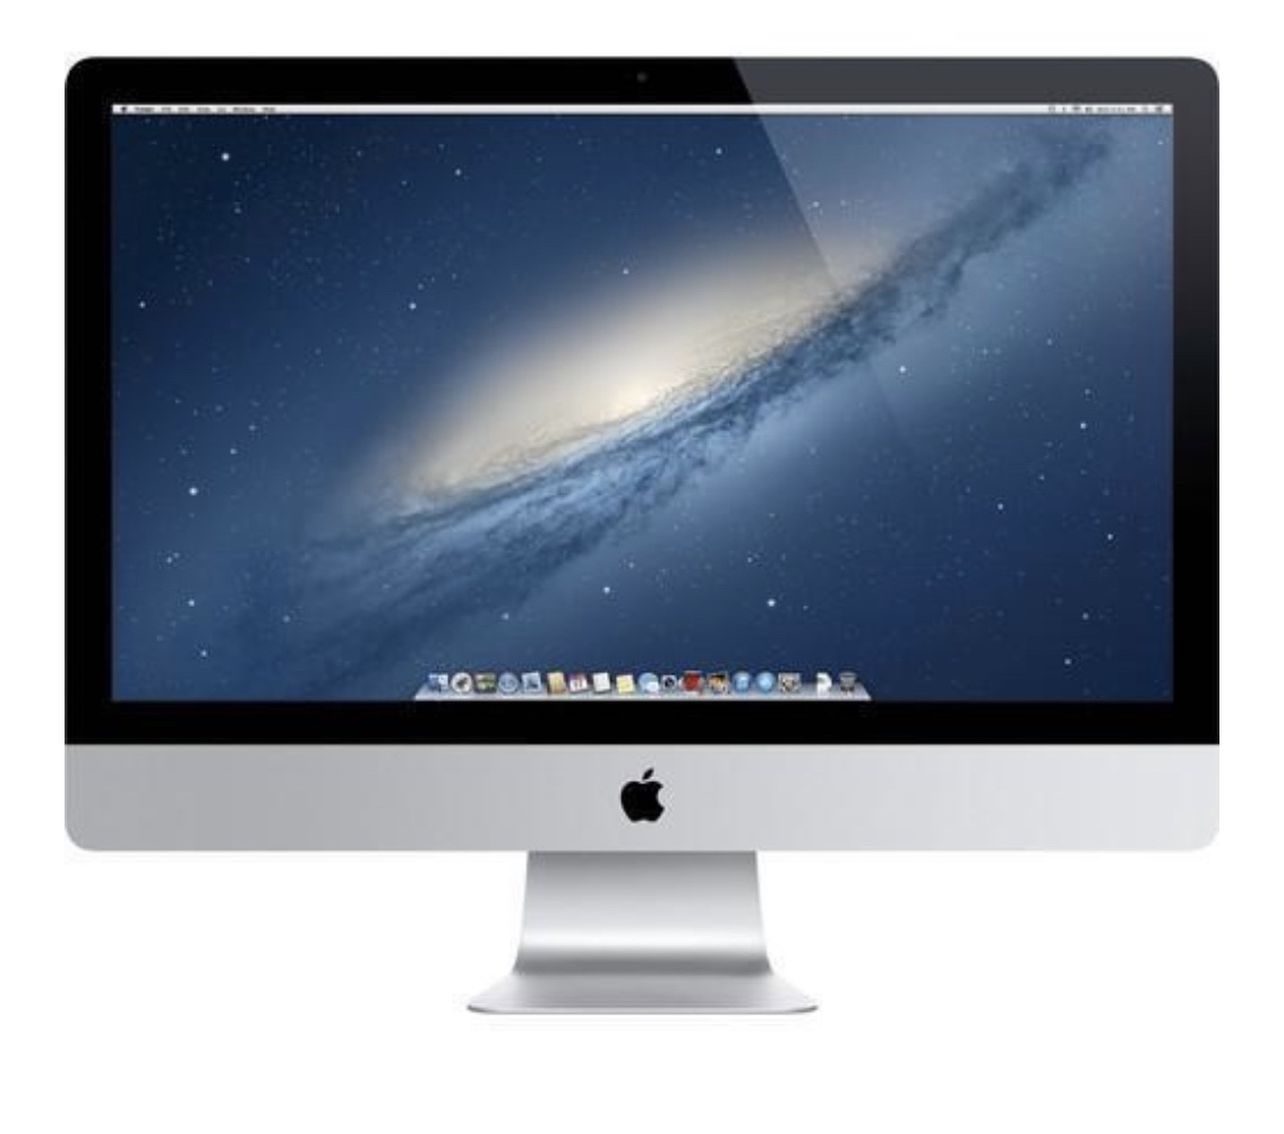 Mint Condition - 27" iMac Desktop Computer (Late 2013)